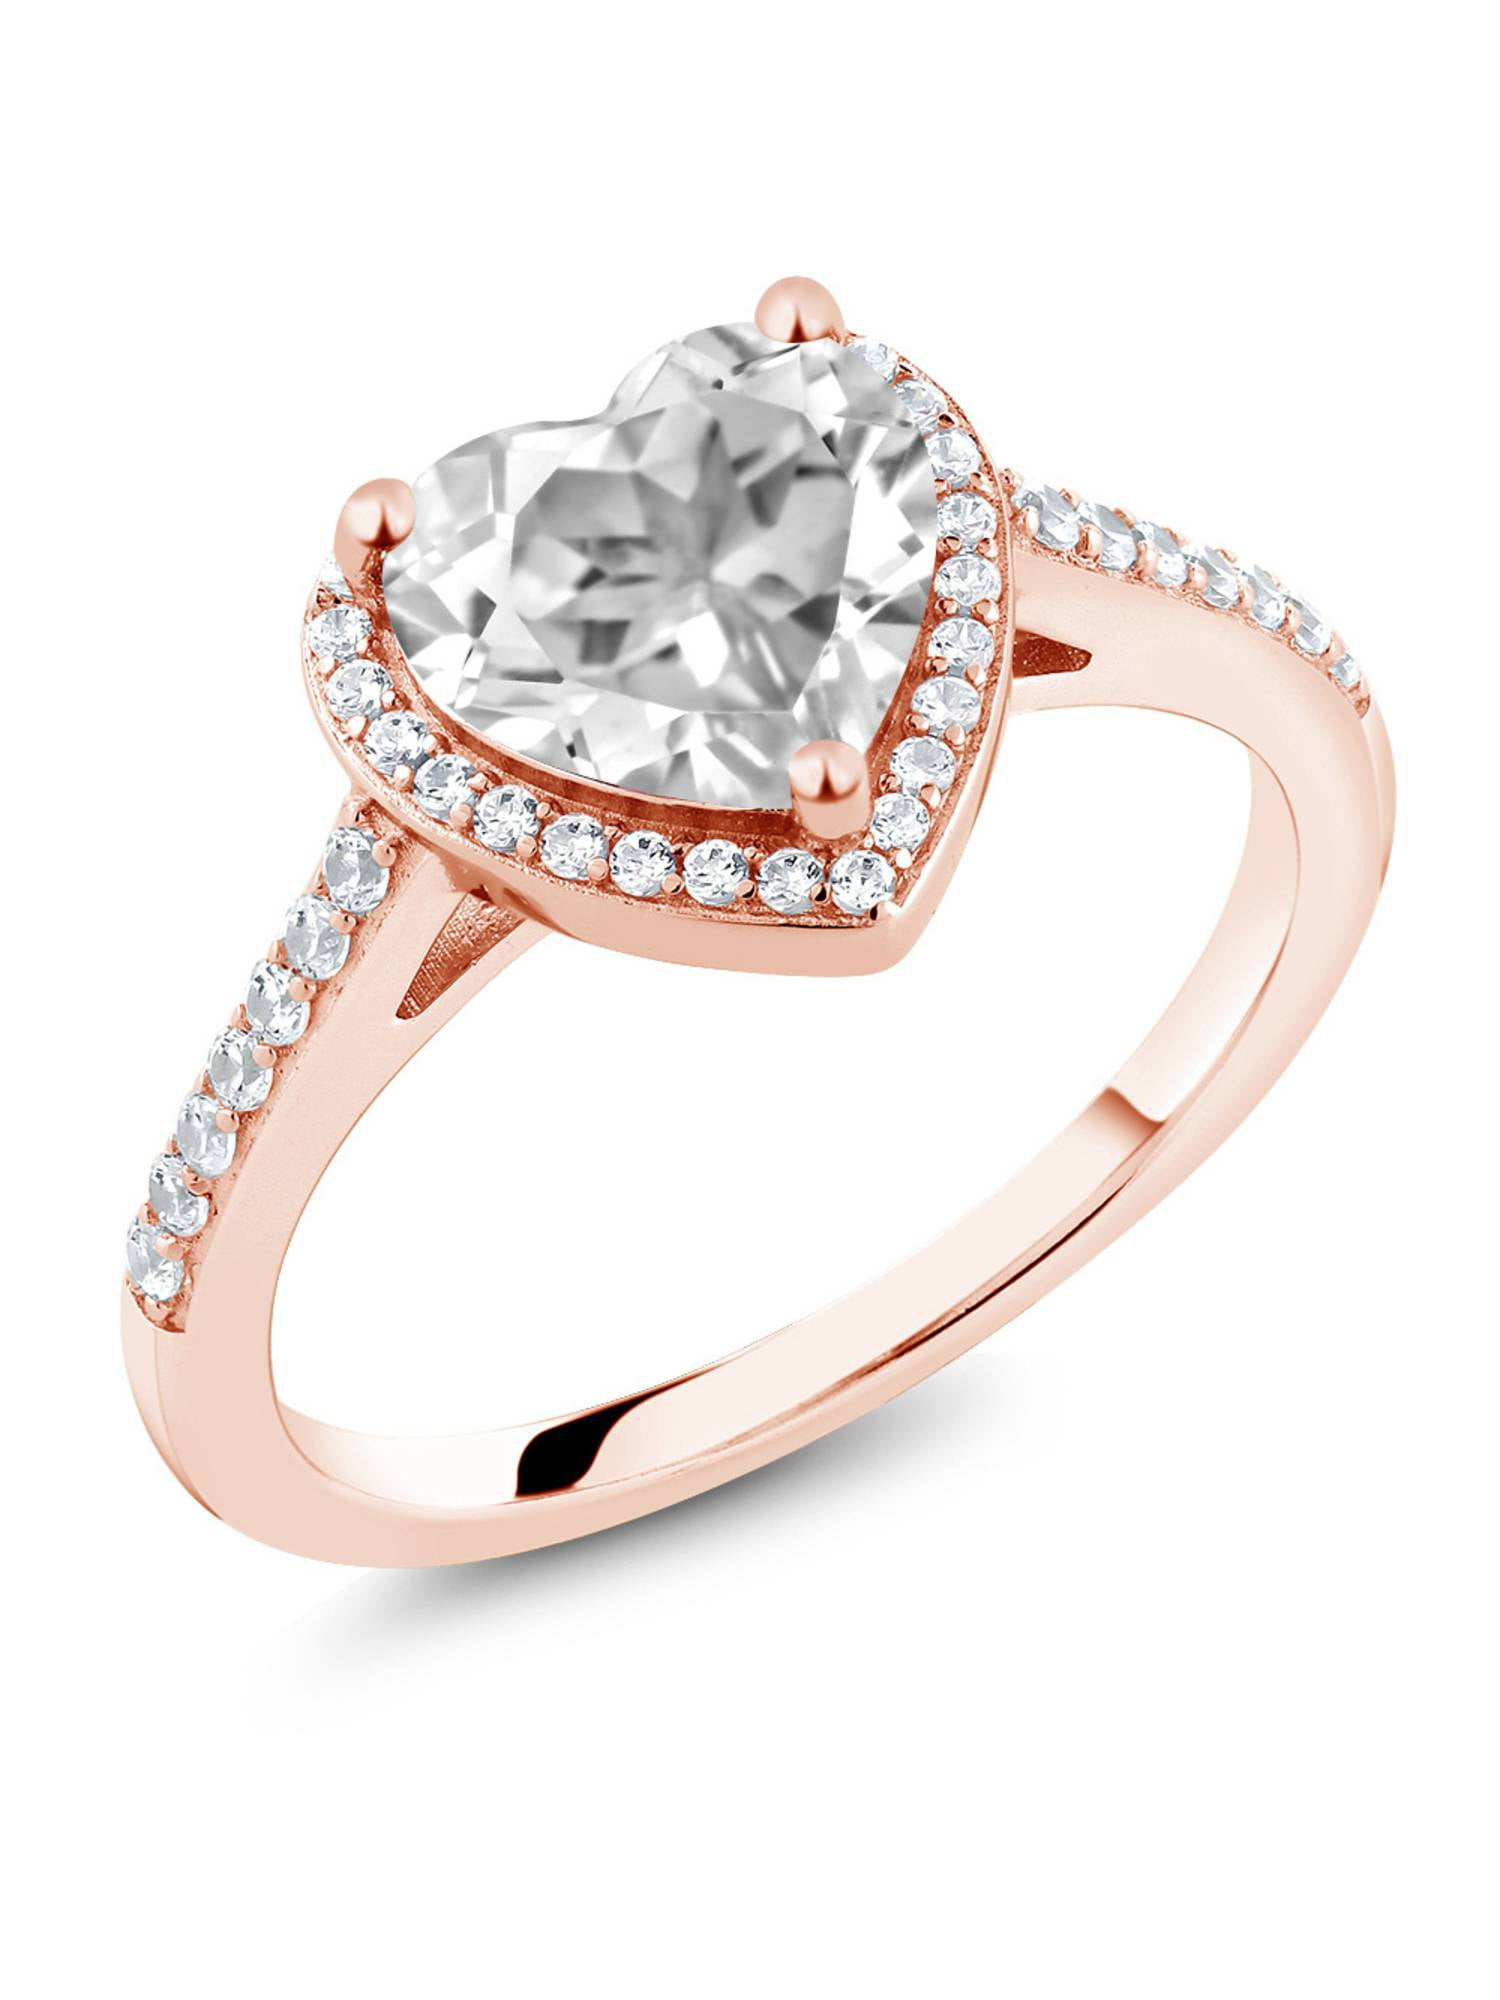 Forever Love Gift Stunning 18K White Gold Filled White Topaz Ring Size 5/6/7/8/9 